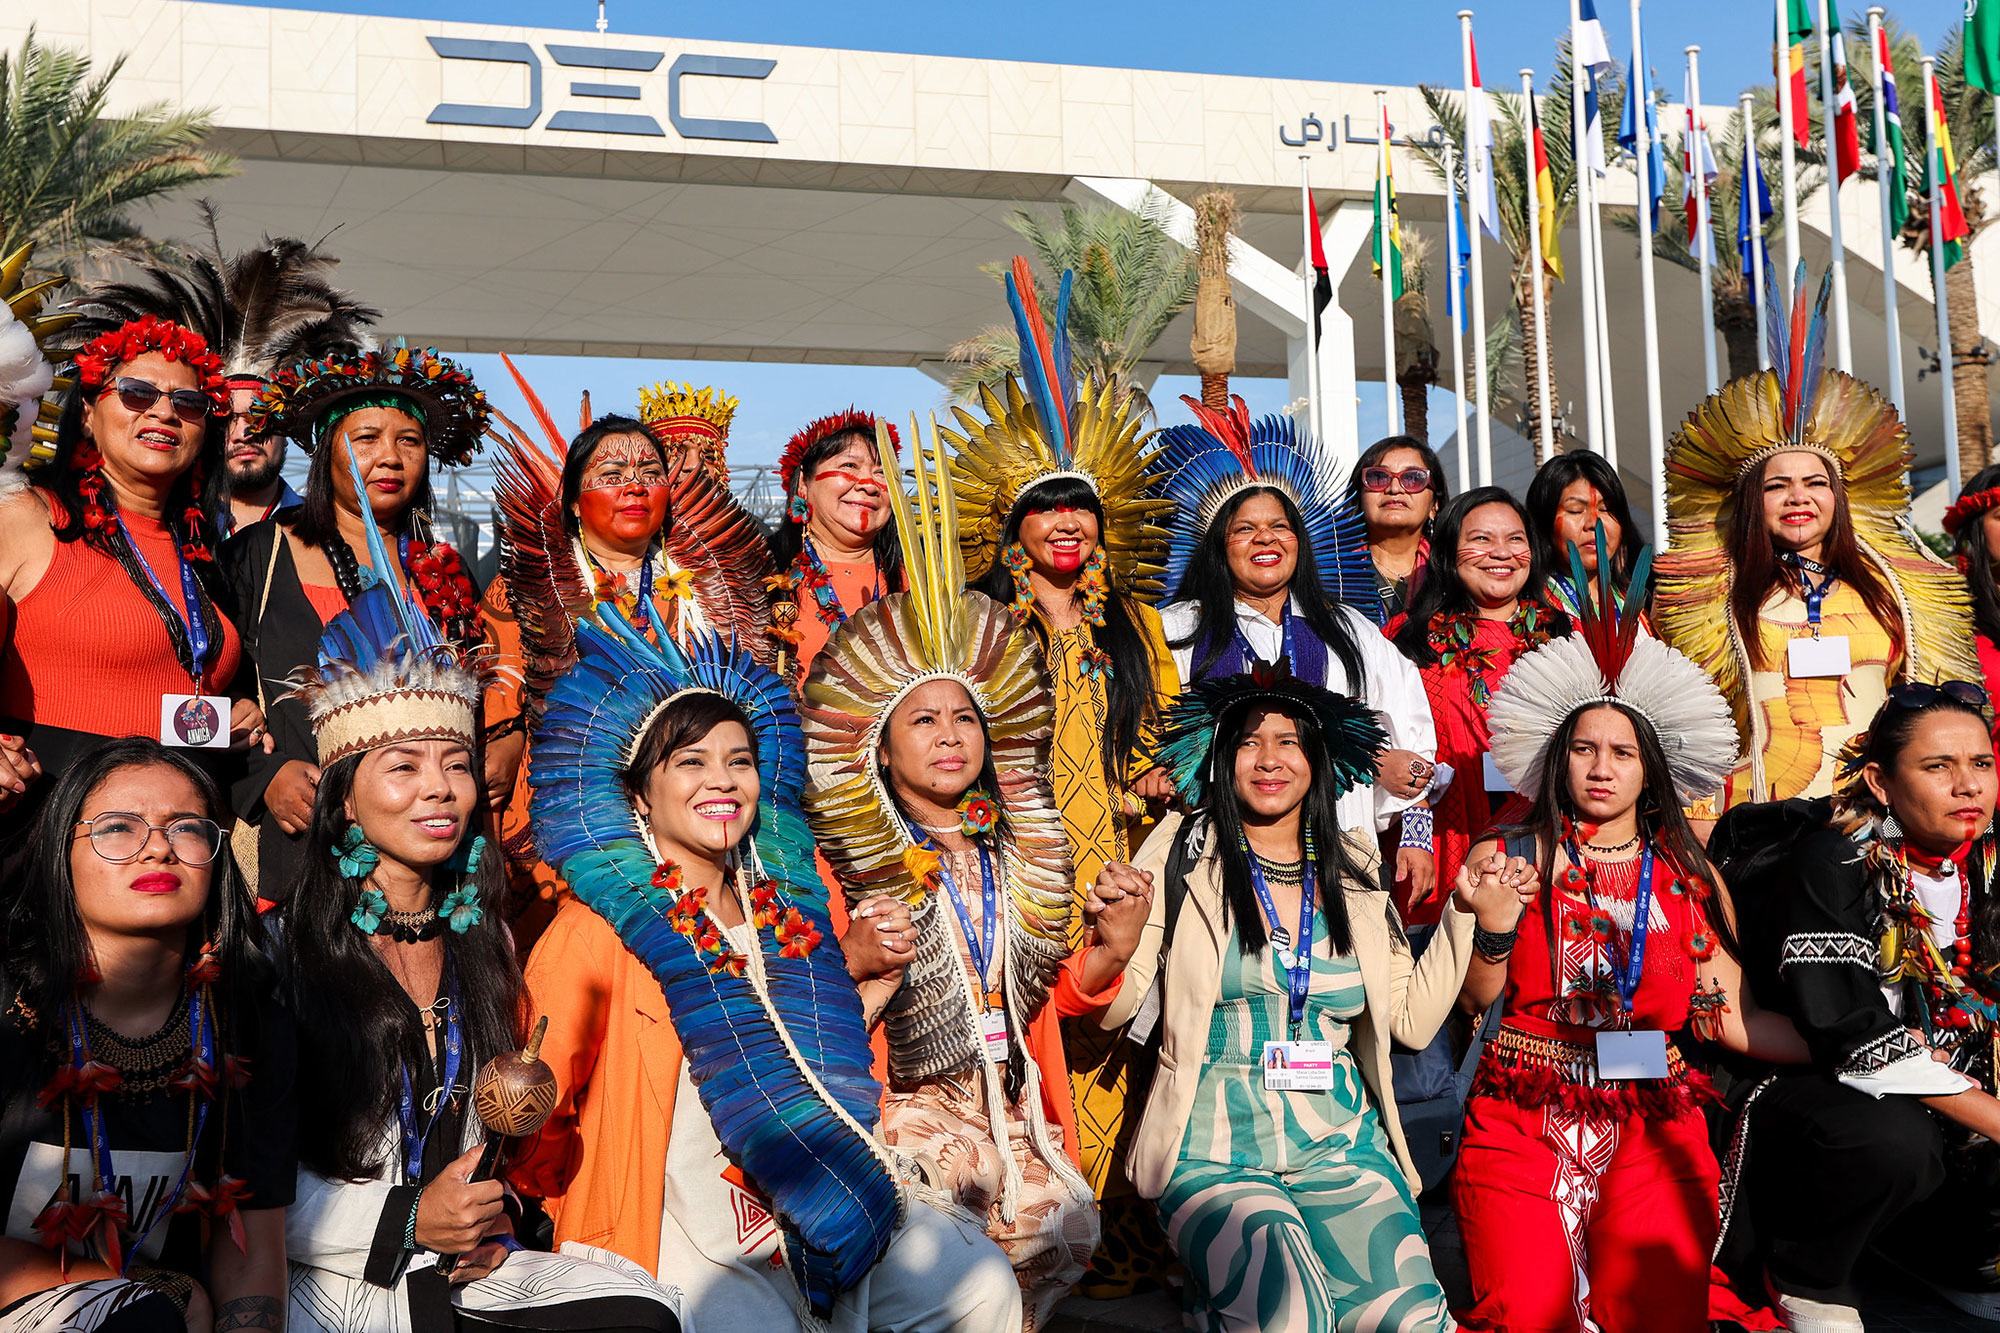 برازیل کے دیسی قبائل سے تعلق رکھنے والی خواتین کا وفد بھی کاپ28 کانفرنس میں شریک ہے۔